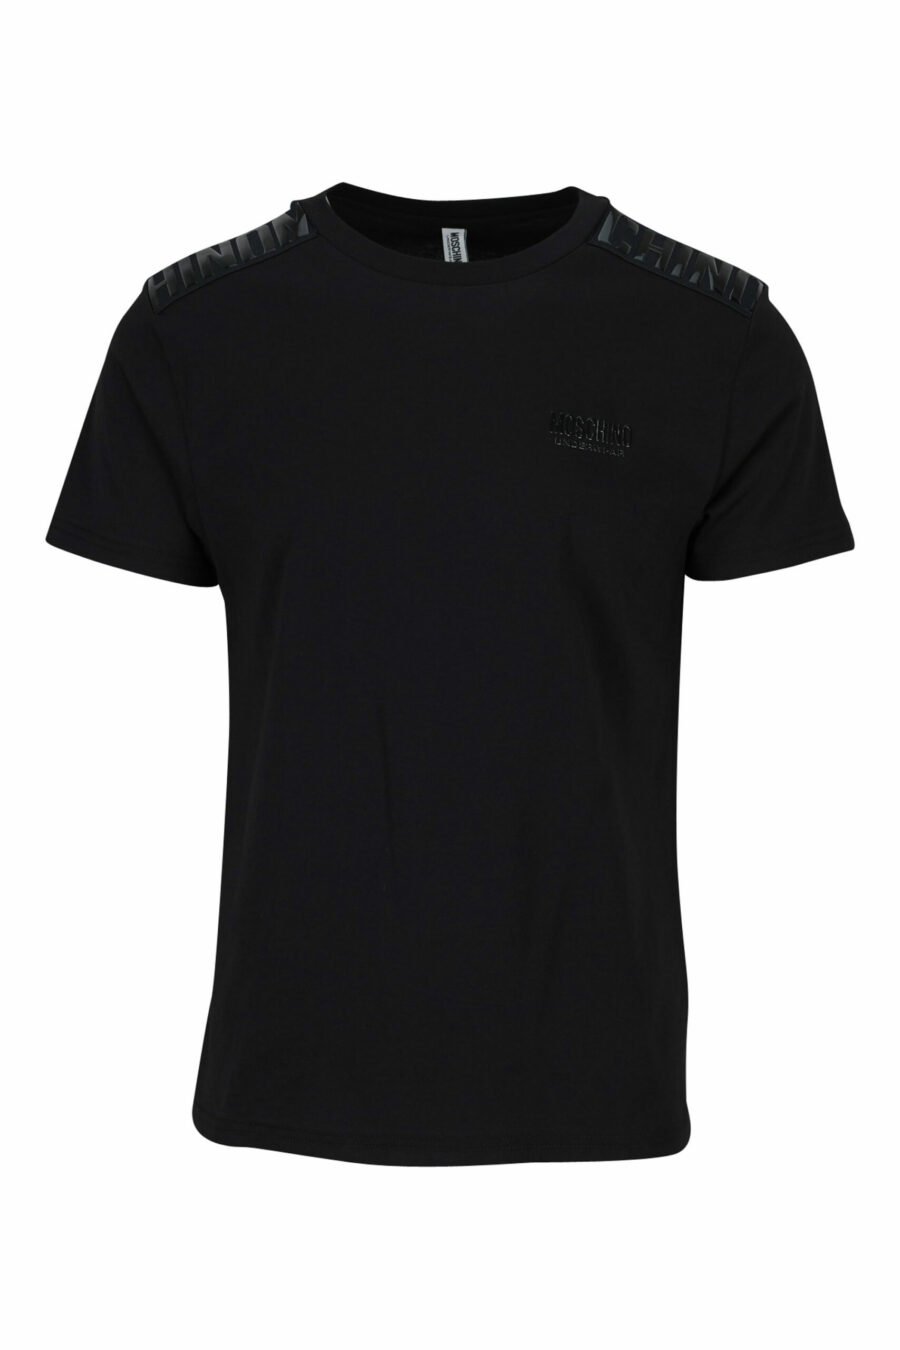 Schwarzes T-Shirt mit monochromem Logoband auf den Schultern - 889316992724 skaliert